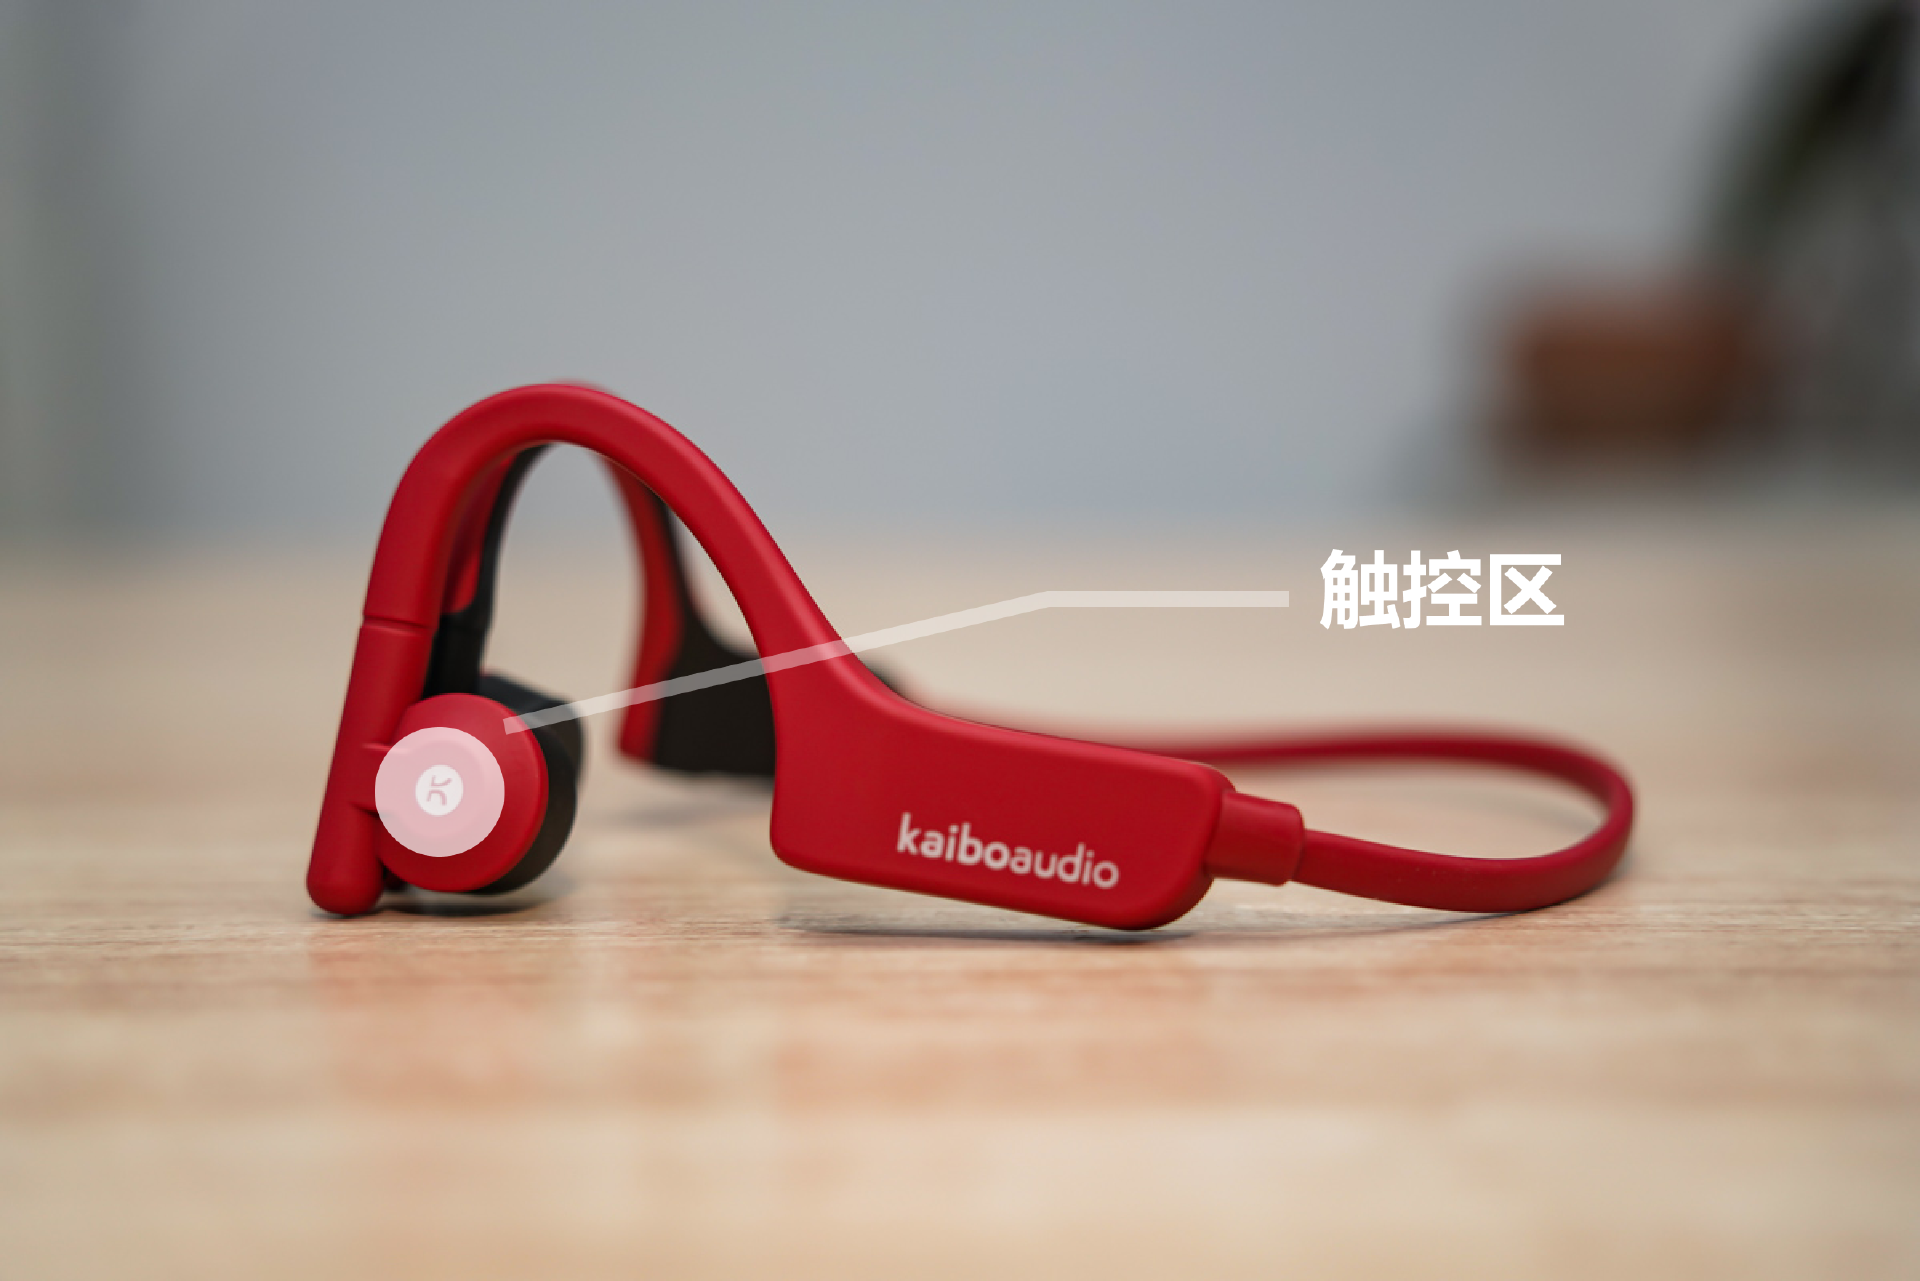 kaiboaudio Verse Plus骨传导耳机评测：出海品牌的拳头产品表现如何？-我爱音频网